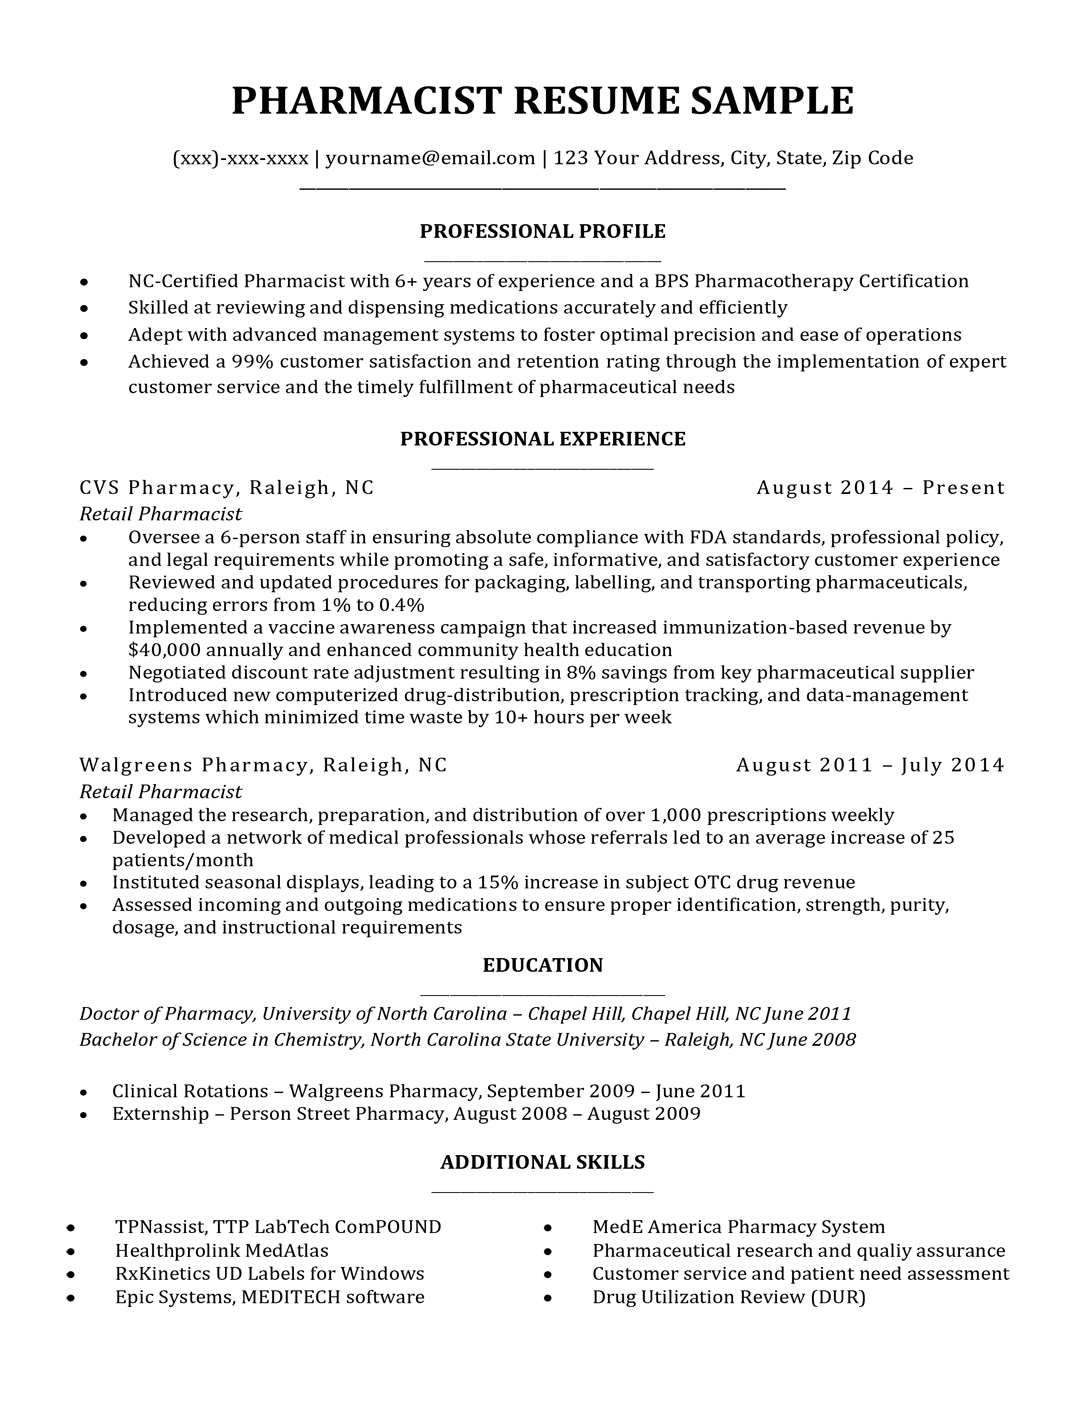 Pharmacist resume sample